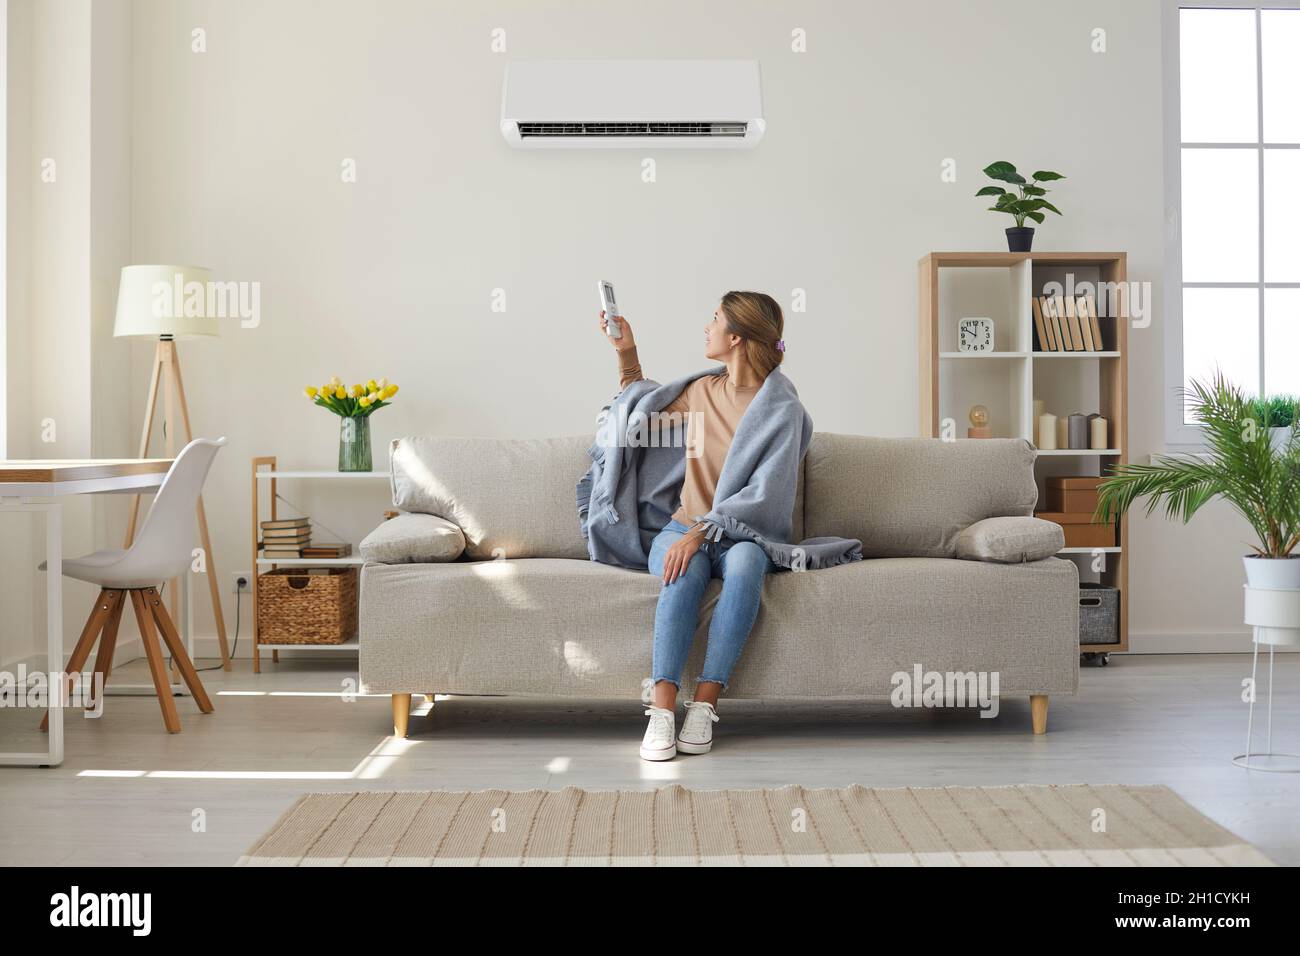 Frau genießt kühle frische Luft in ihrem Wohnzimmer mit Klimaanlage an der Wand Stockfoto